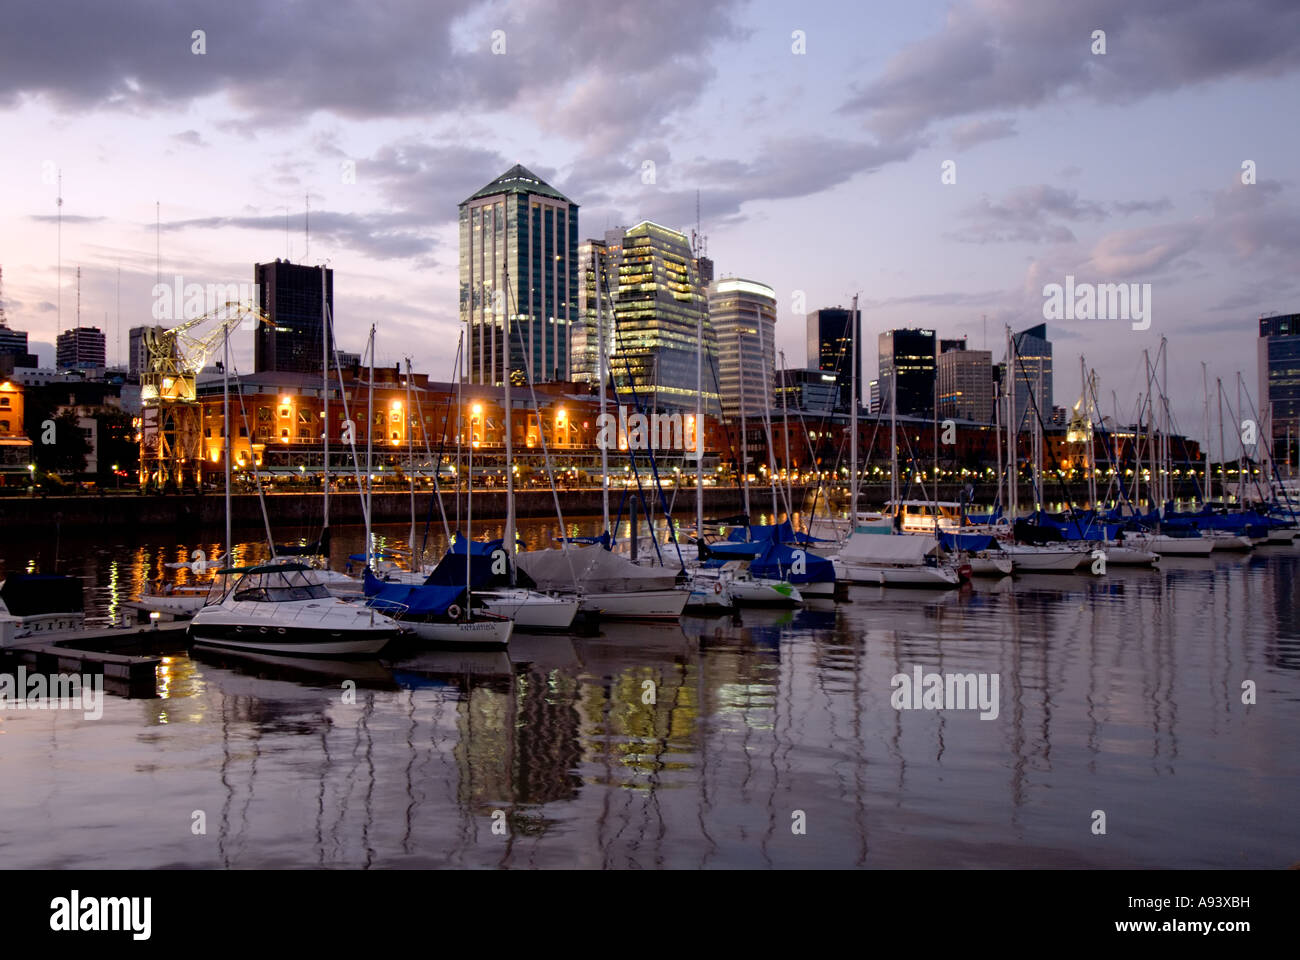 Puerto Madero Docks, Ciudad de Buenos Aires, Argentina Stock Photo